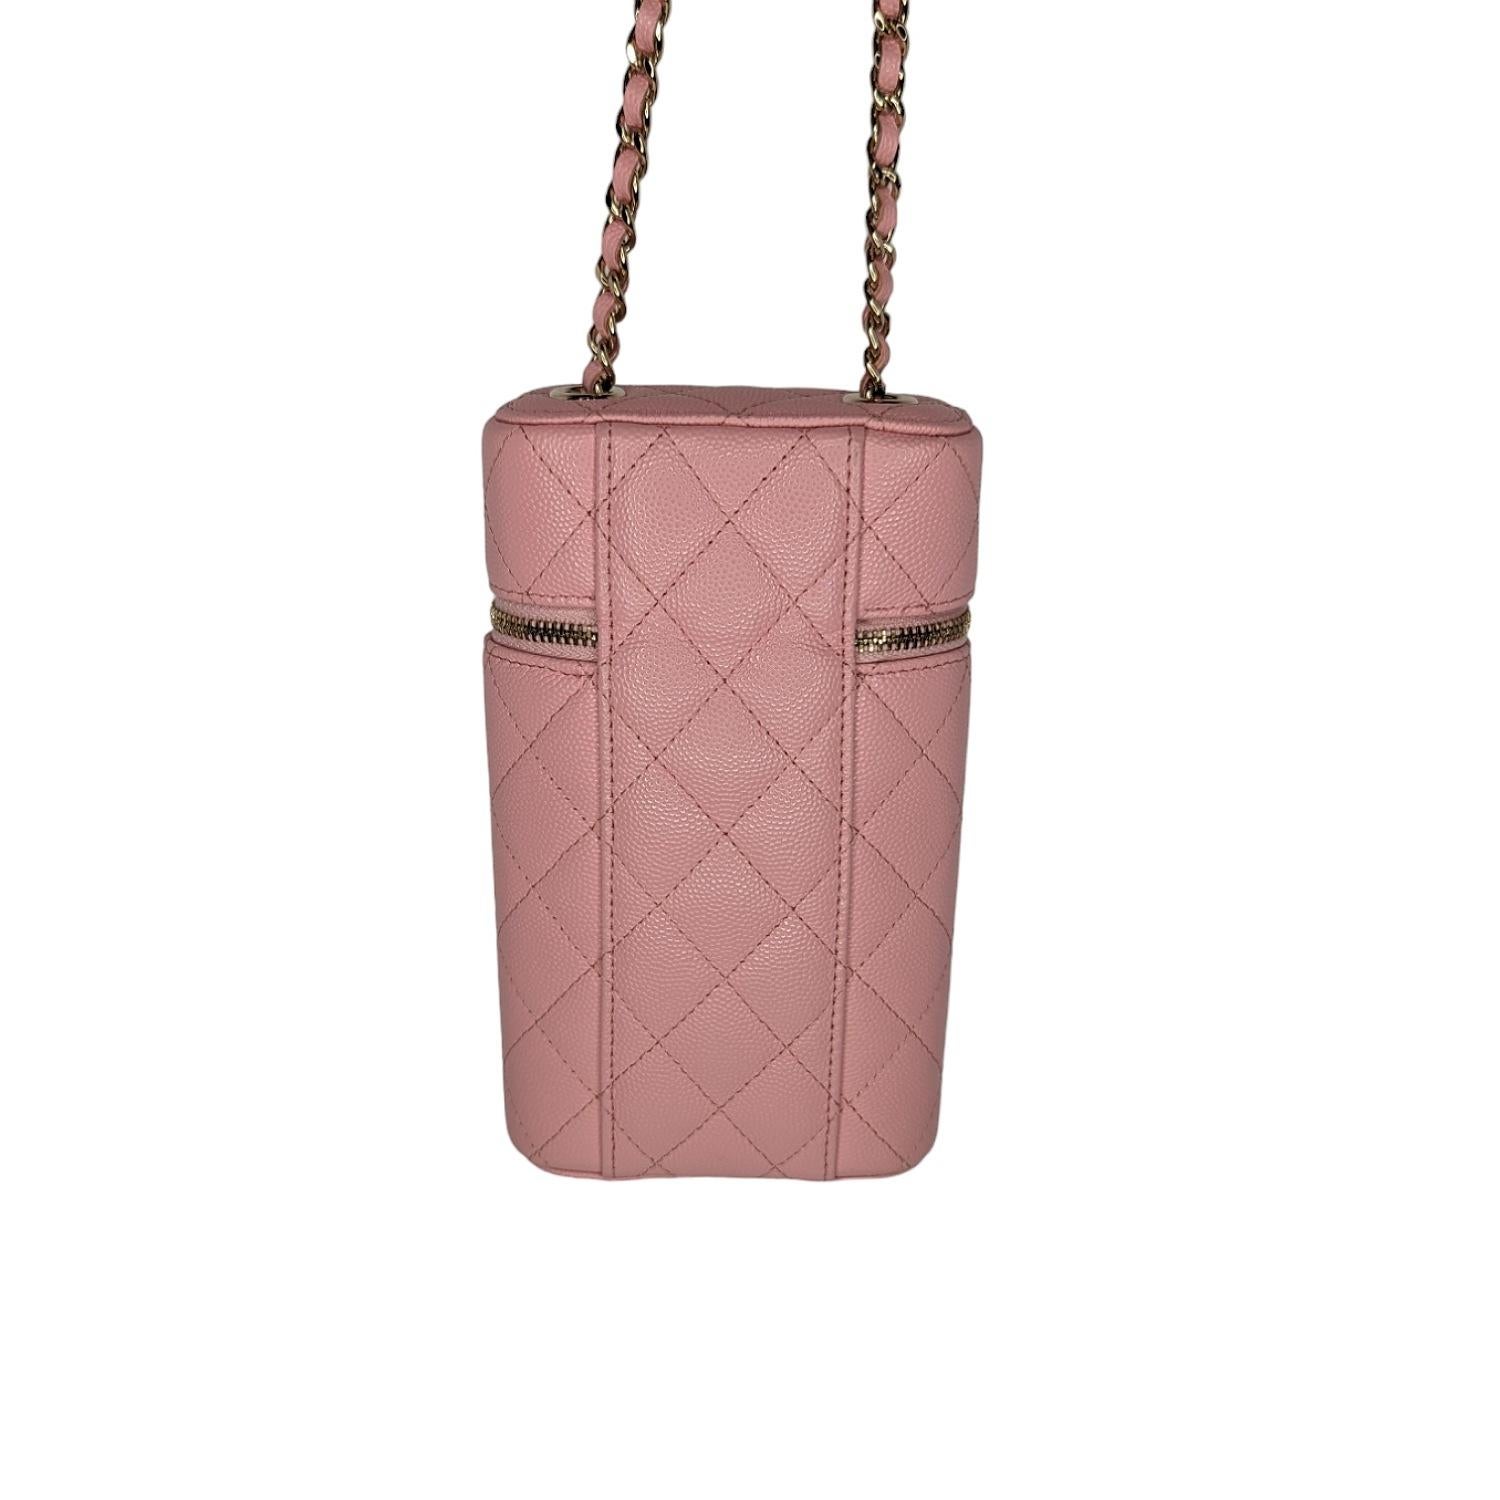 Diese schicke Tasche ist aus luxuriösem, rautenförmig gestepptem Leder in Bubble Gum Pink gefertigt. Sie hat einen Schulterriemen aus Leder mit goldenen Kettengliedern und ein goldenes CC-Logo auf der Vorderseite. Der Reißverschluss an der Oberseite